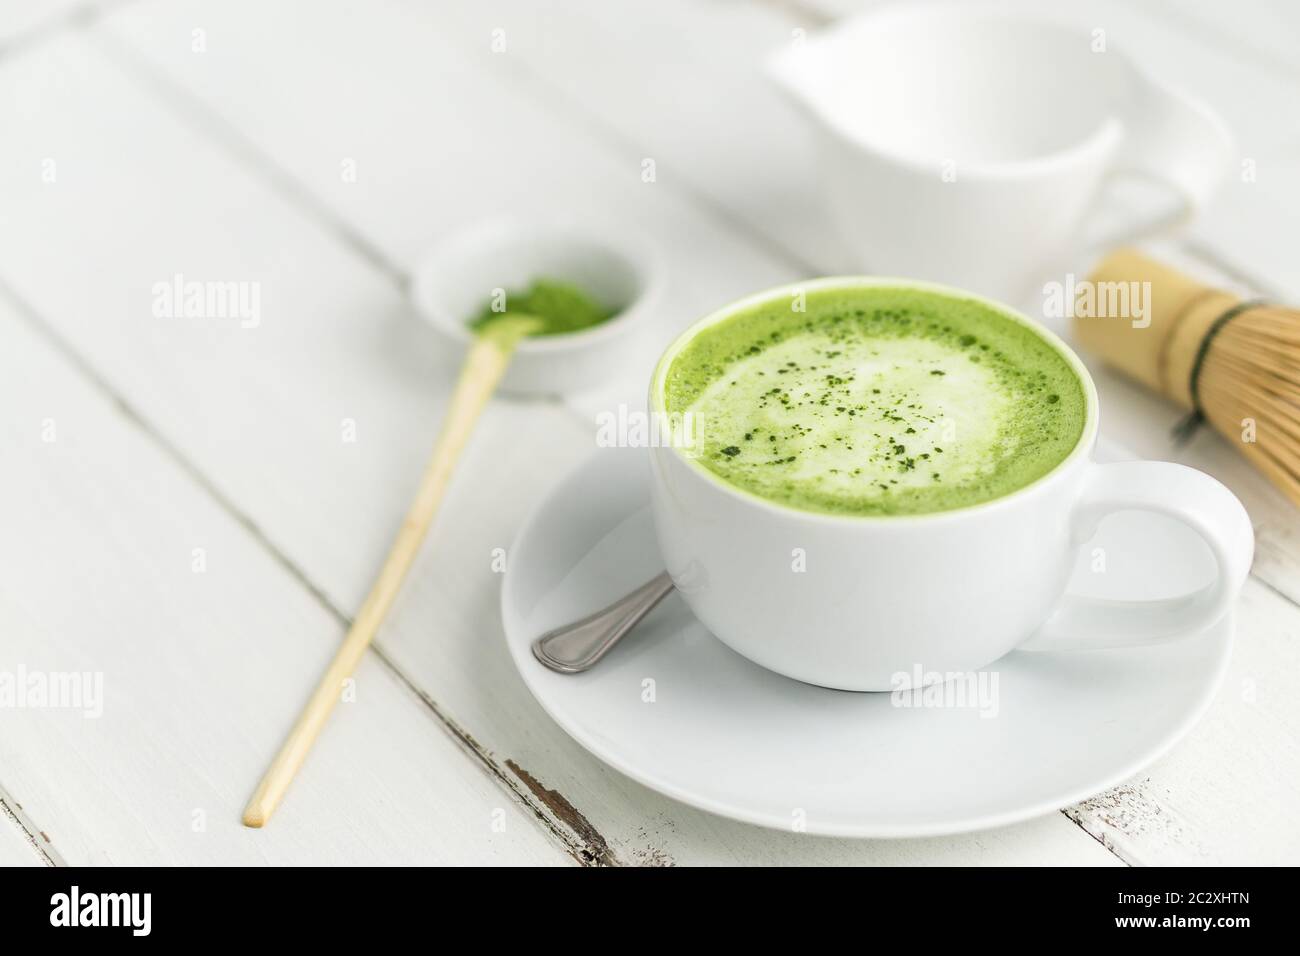 Grüner Tee Matcha Latte Tasse auf weißem Hintergrund. Dieser Latte ist eine köstliche Art, die Energie zu steigern und die gesunden Vorteile von Matcha zu genießen. Stockfoto